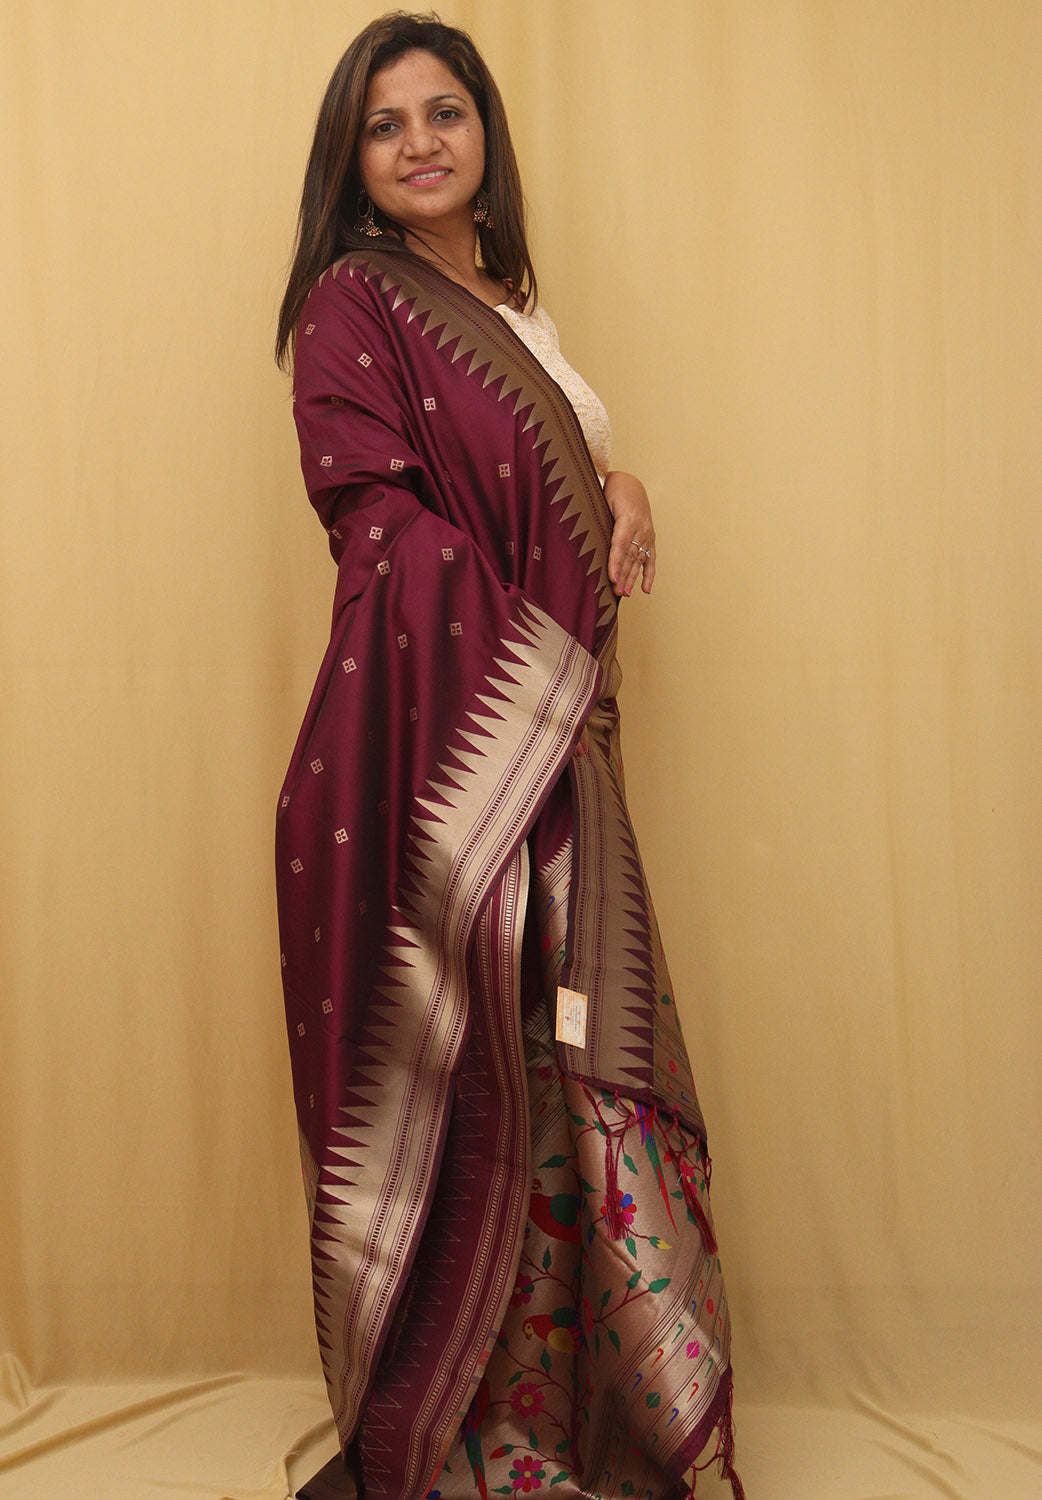 Stunning Maroon Paithani Silk Dupatta with Bird & Floral Design